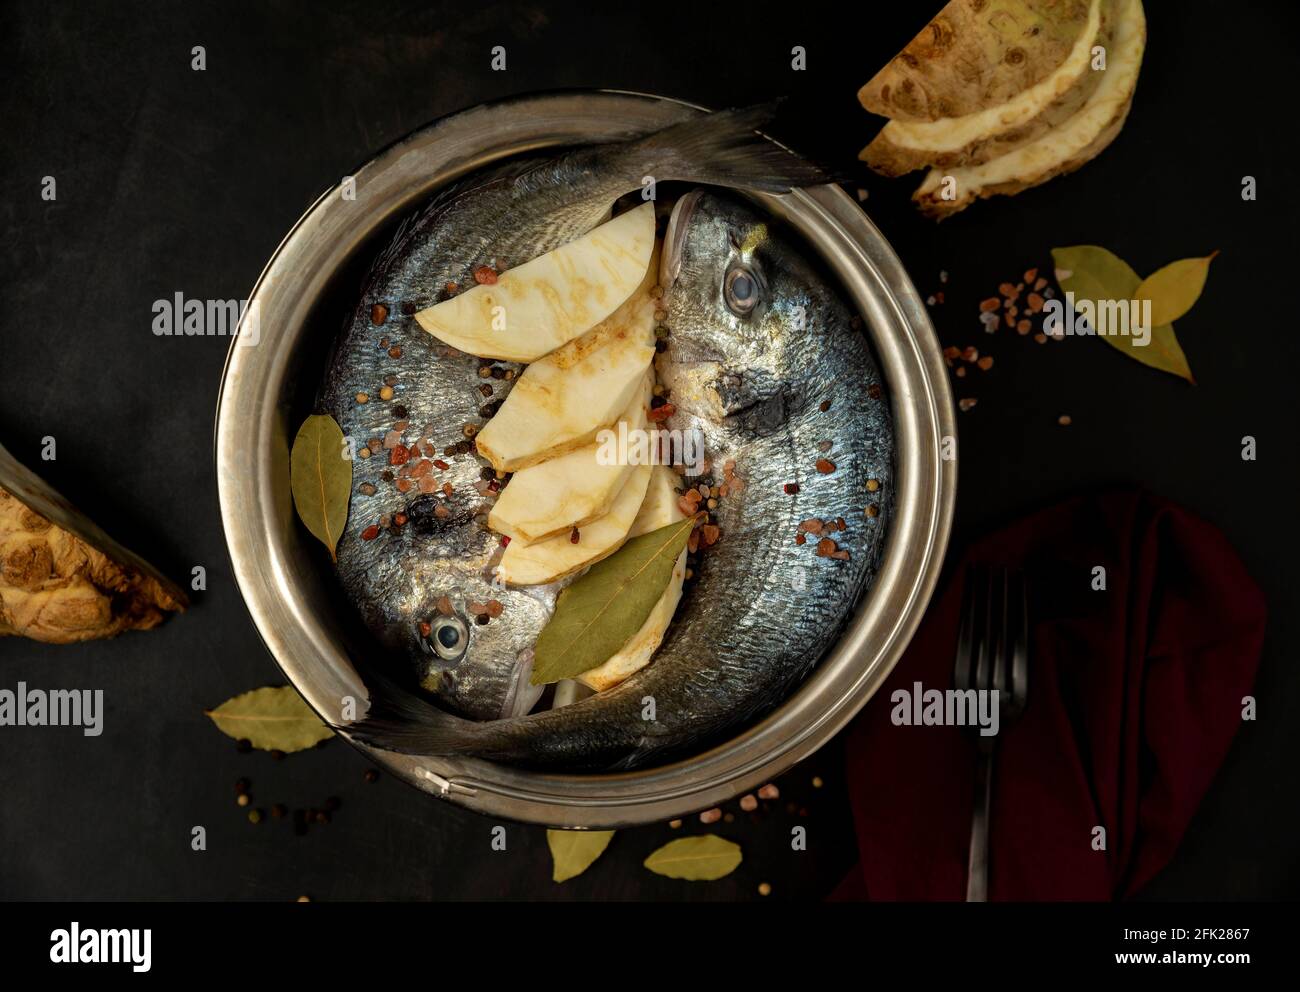 Zwei rohe Brassen in einem Kochtopf auf schwarzem Hintergrund mit Lorbeerblatt, Salz, Knauf Sellerie und schwarzem Pfeffer Dark Mood Fotografie Stockfoto